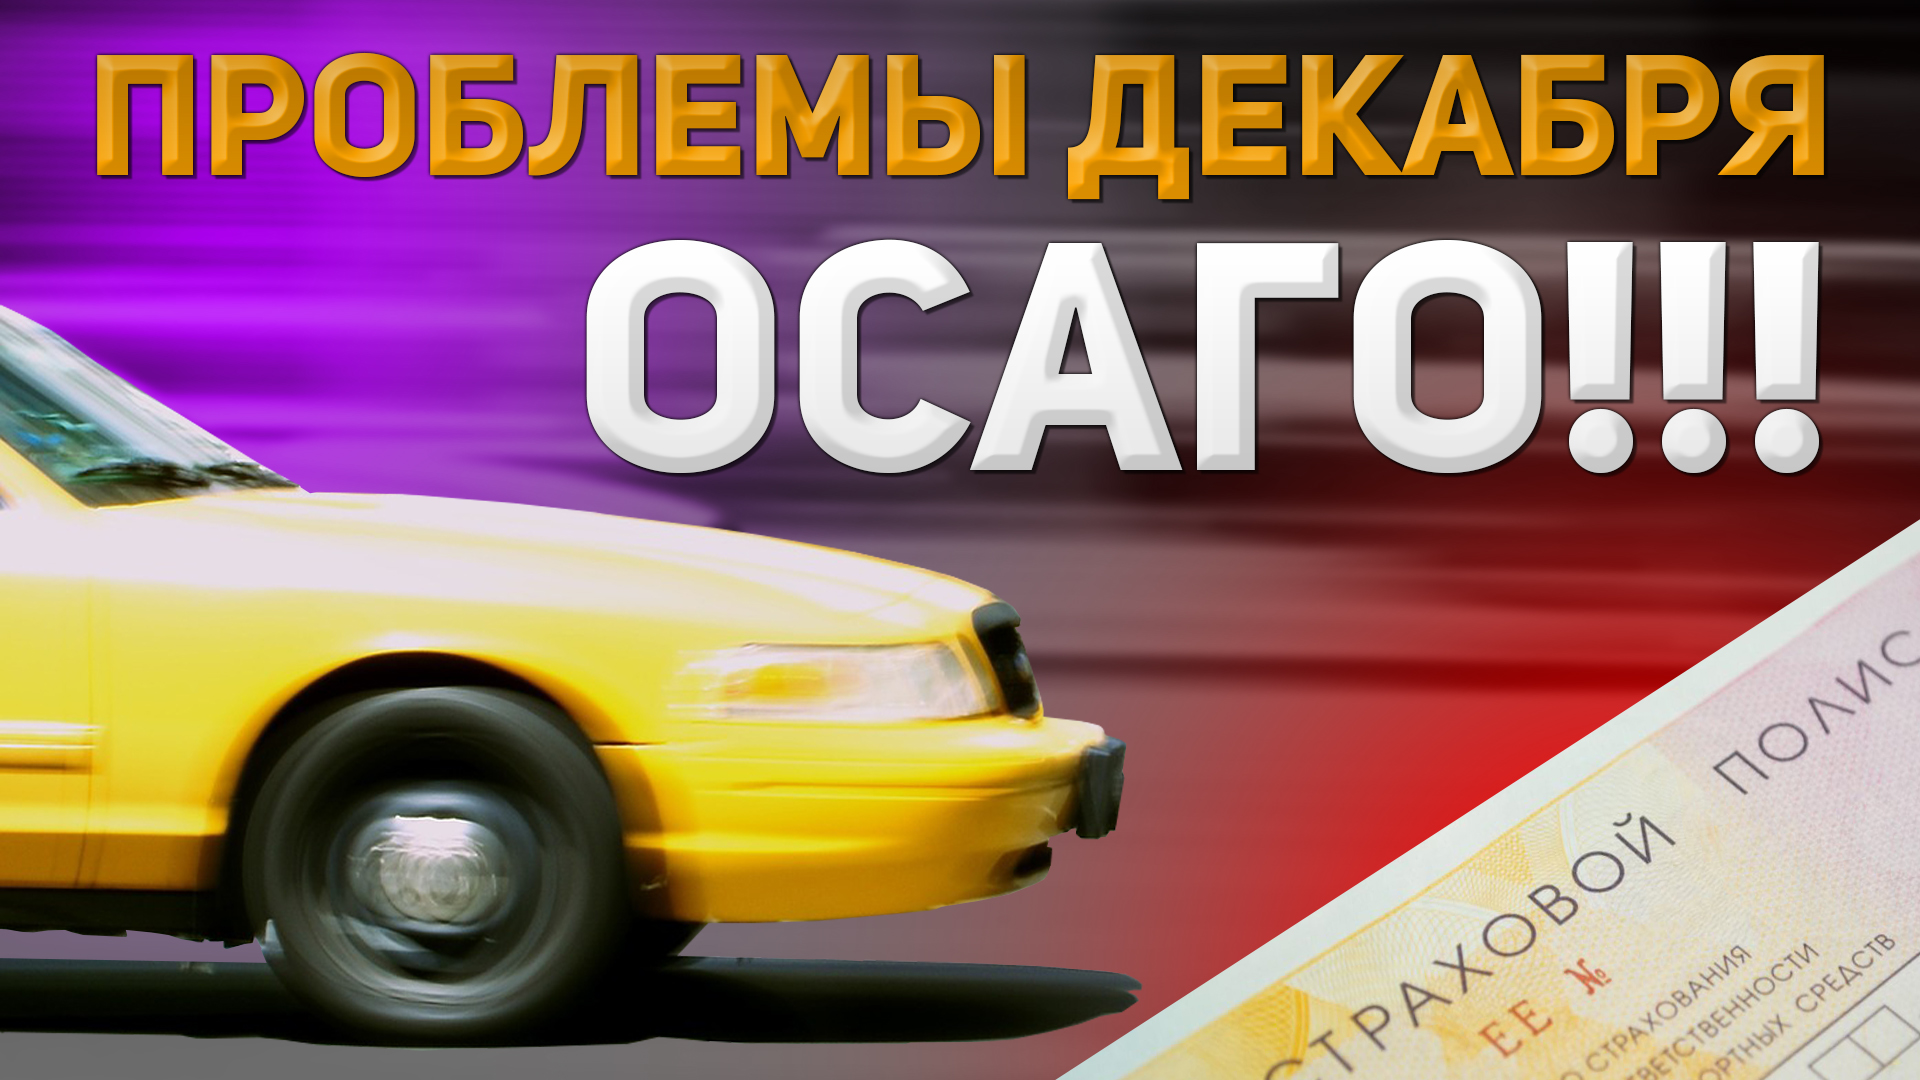 Застраховать Такси По Осаго В Москве